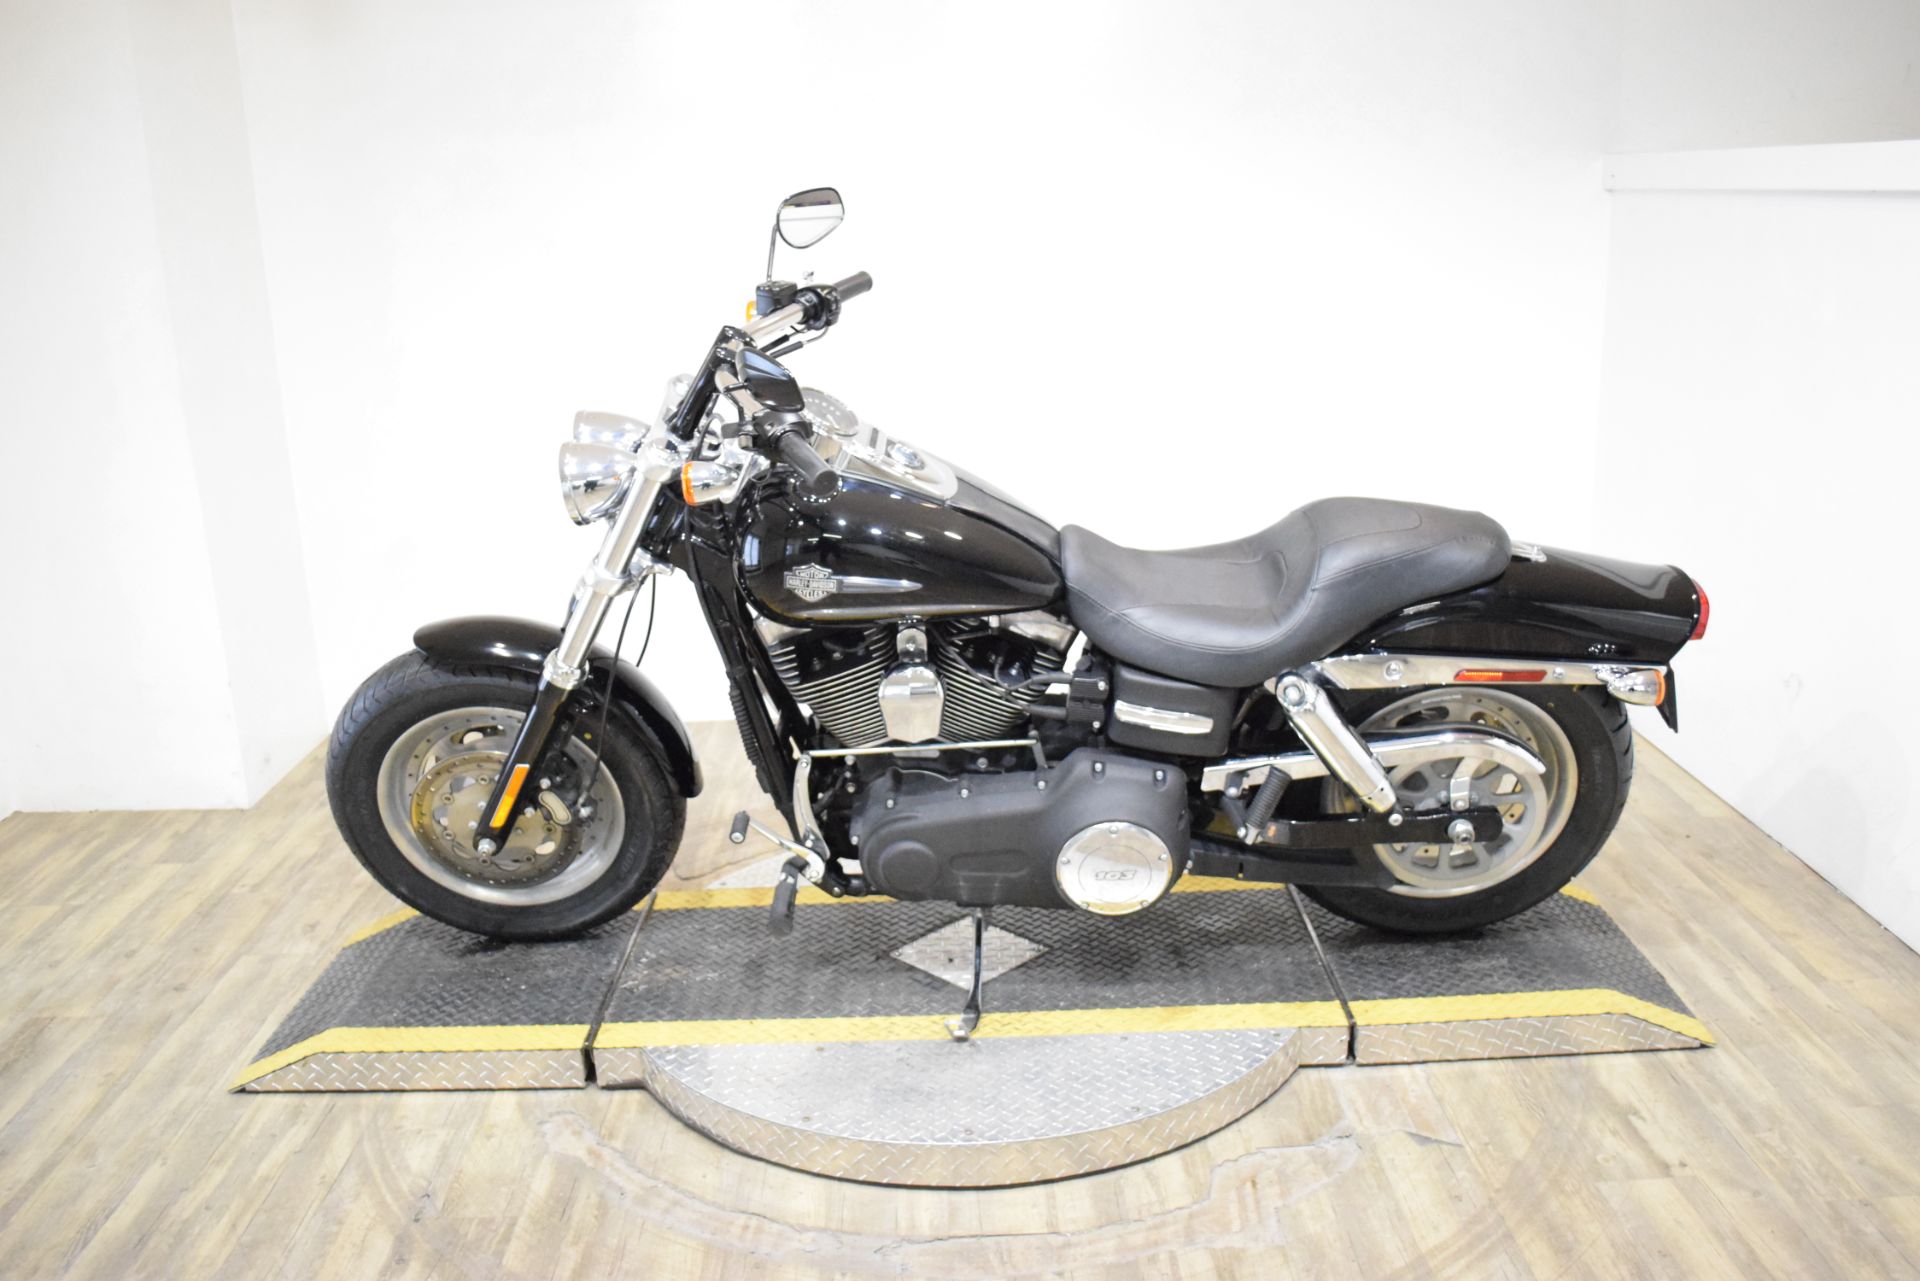 2012 Harley-Davidson Dyna® Fat Bob® in Wauconda, Illinois - Photo 15